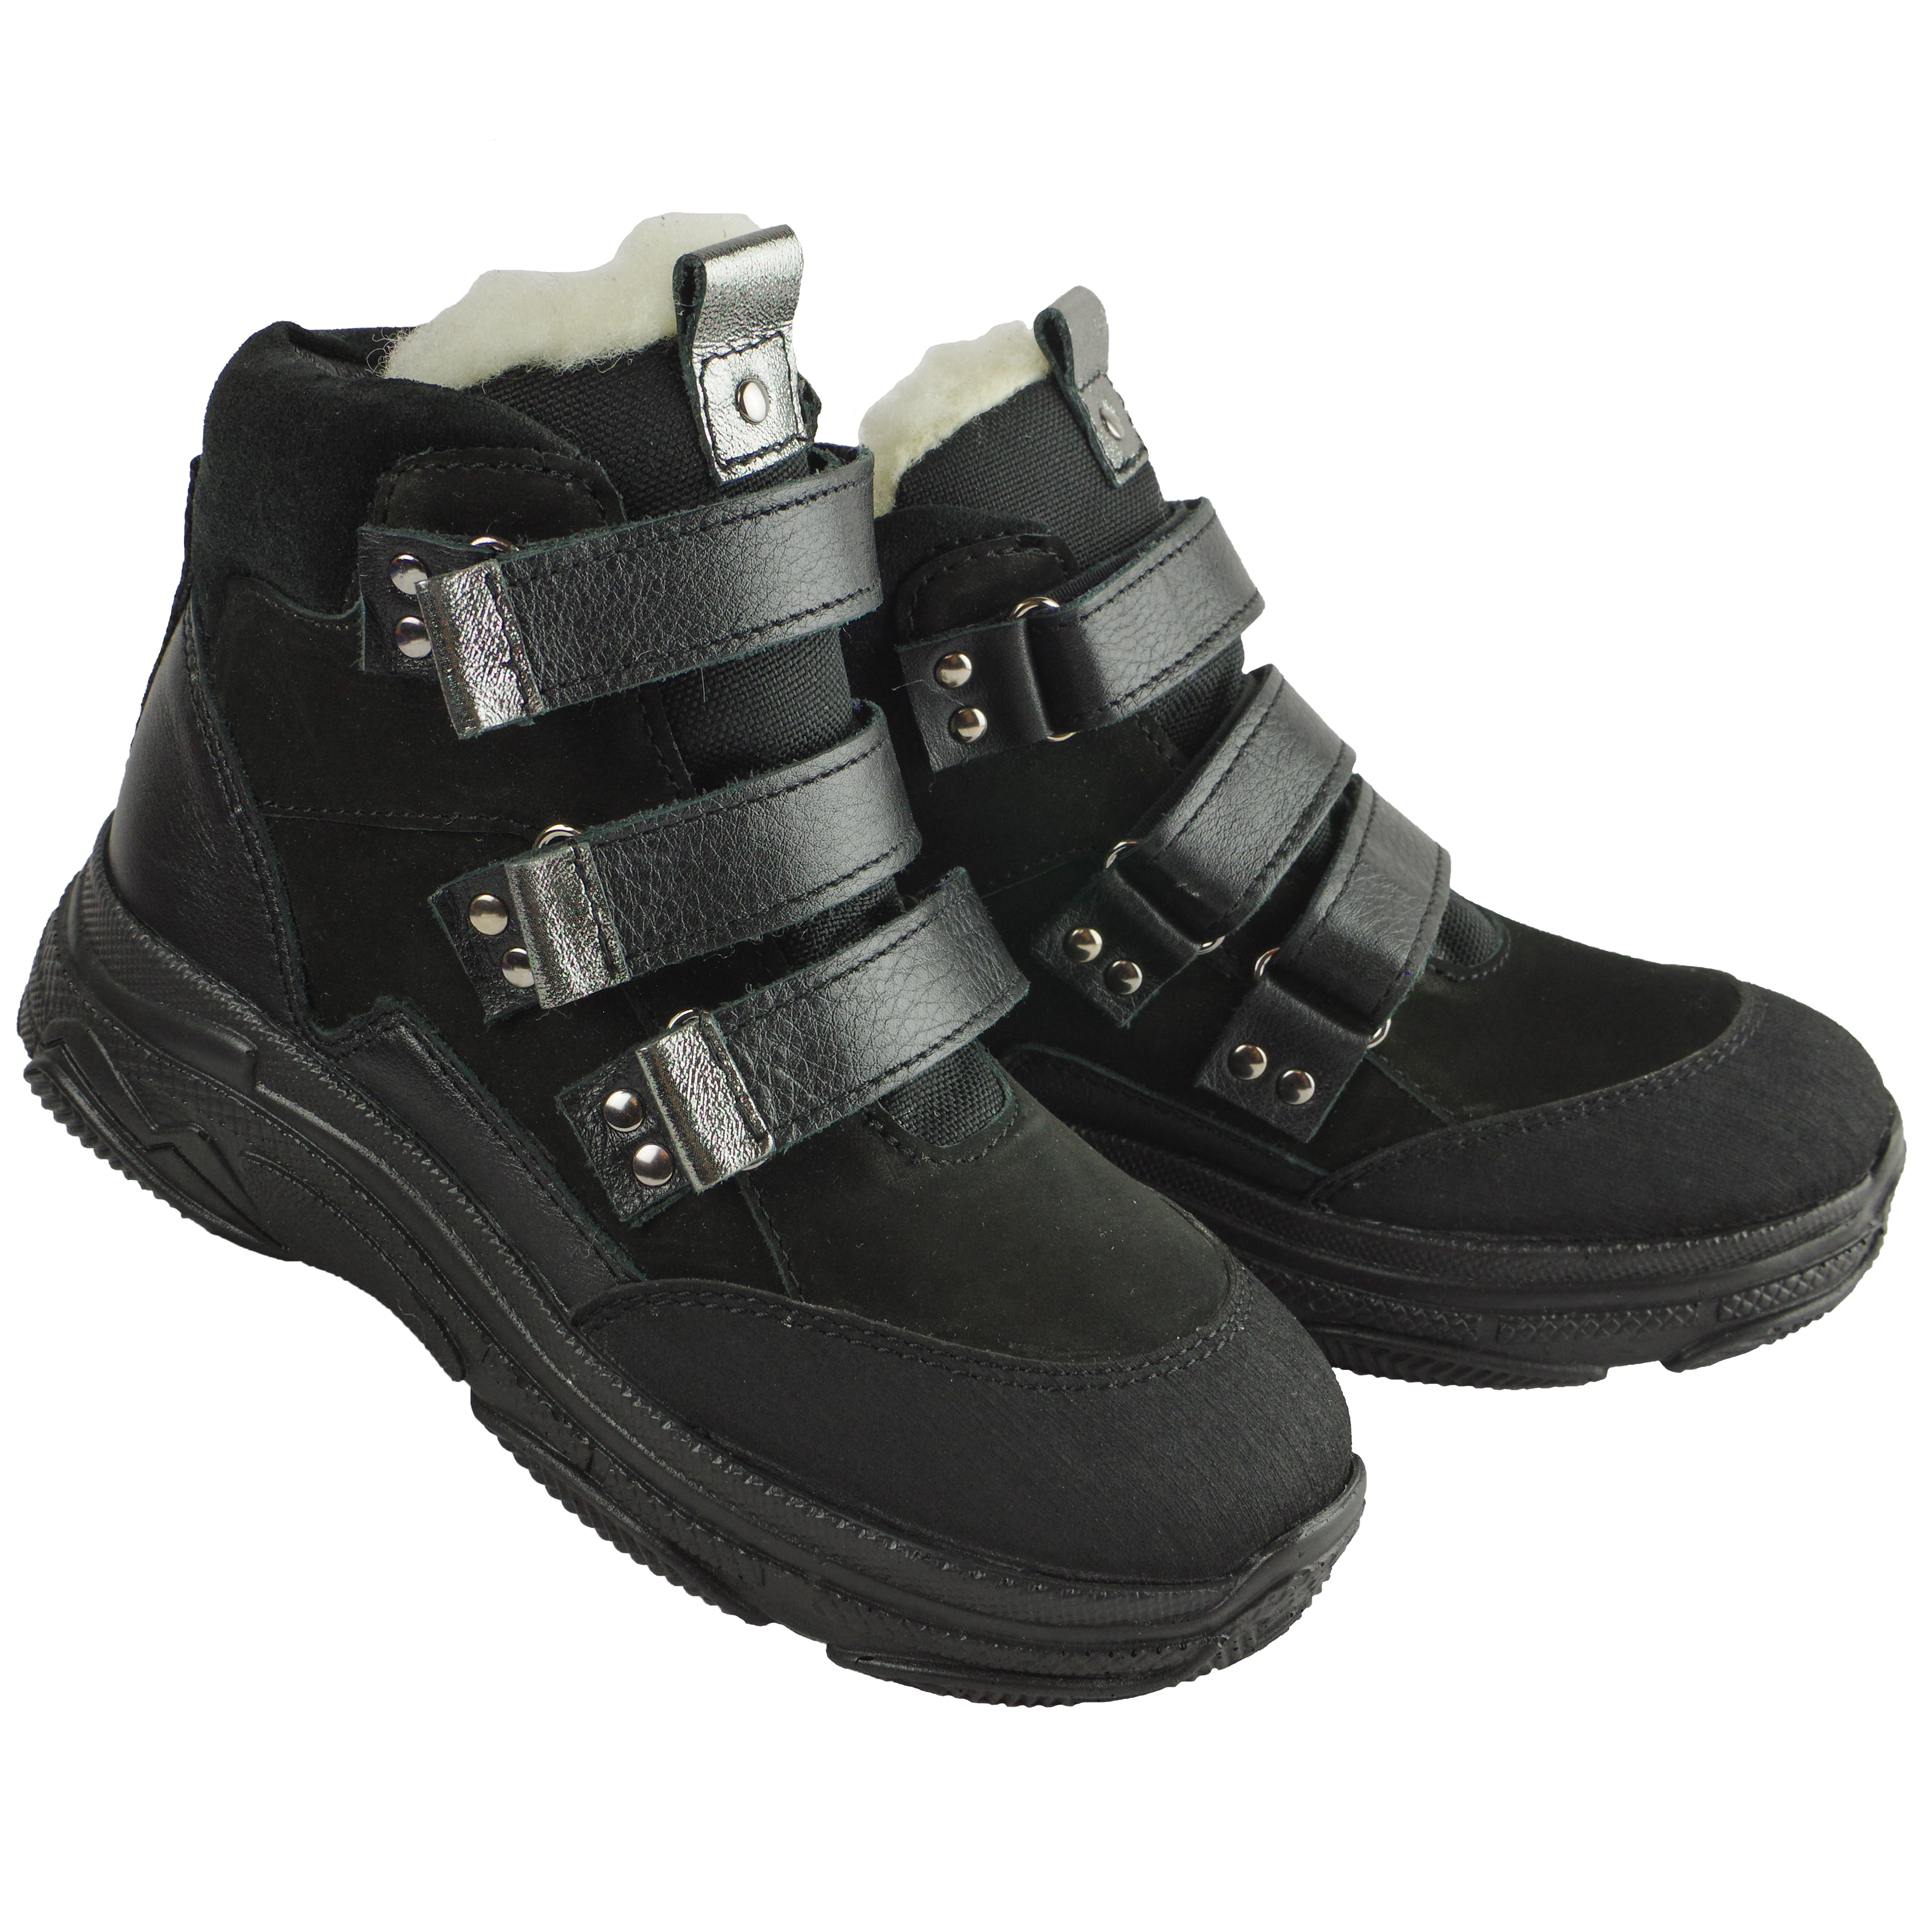 Зимние ботинки детские (2081) материал Нубук, цвет Черный  для девочки 31-38 размеры – Sole Kids, Днепр. Фото 2